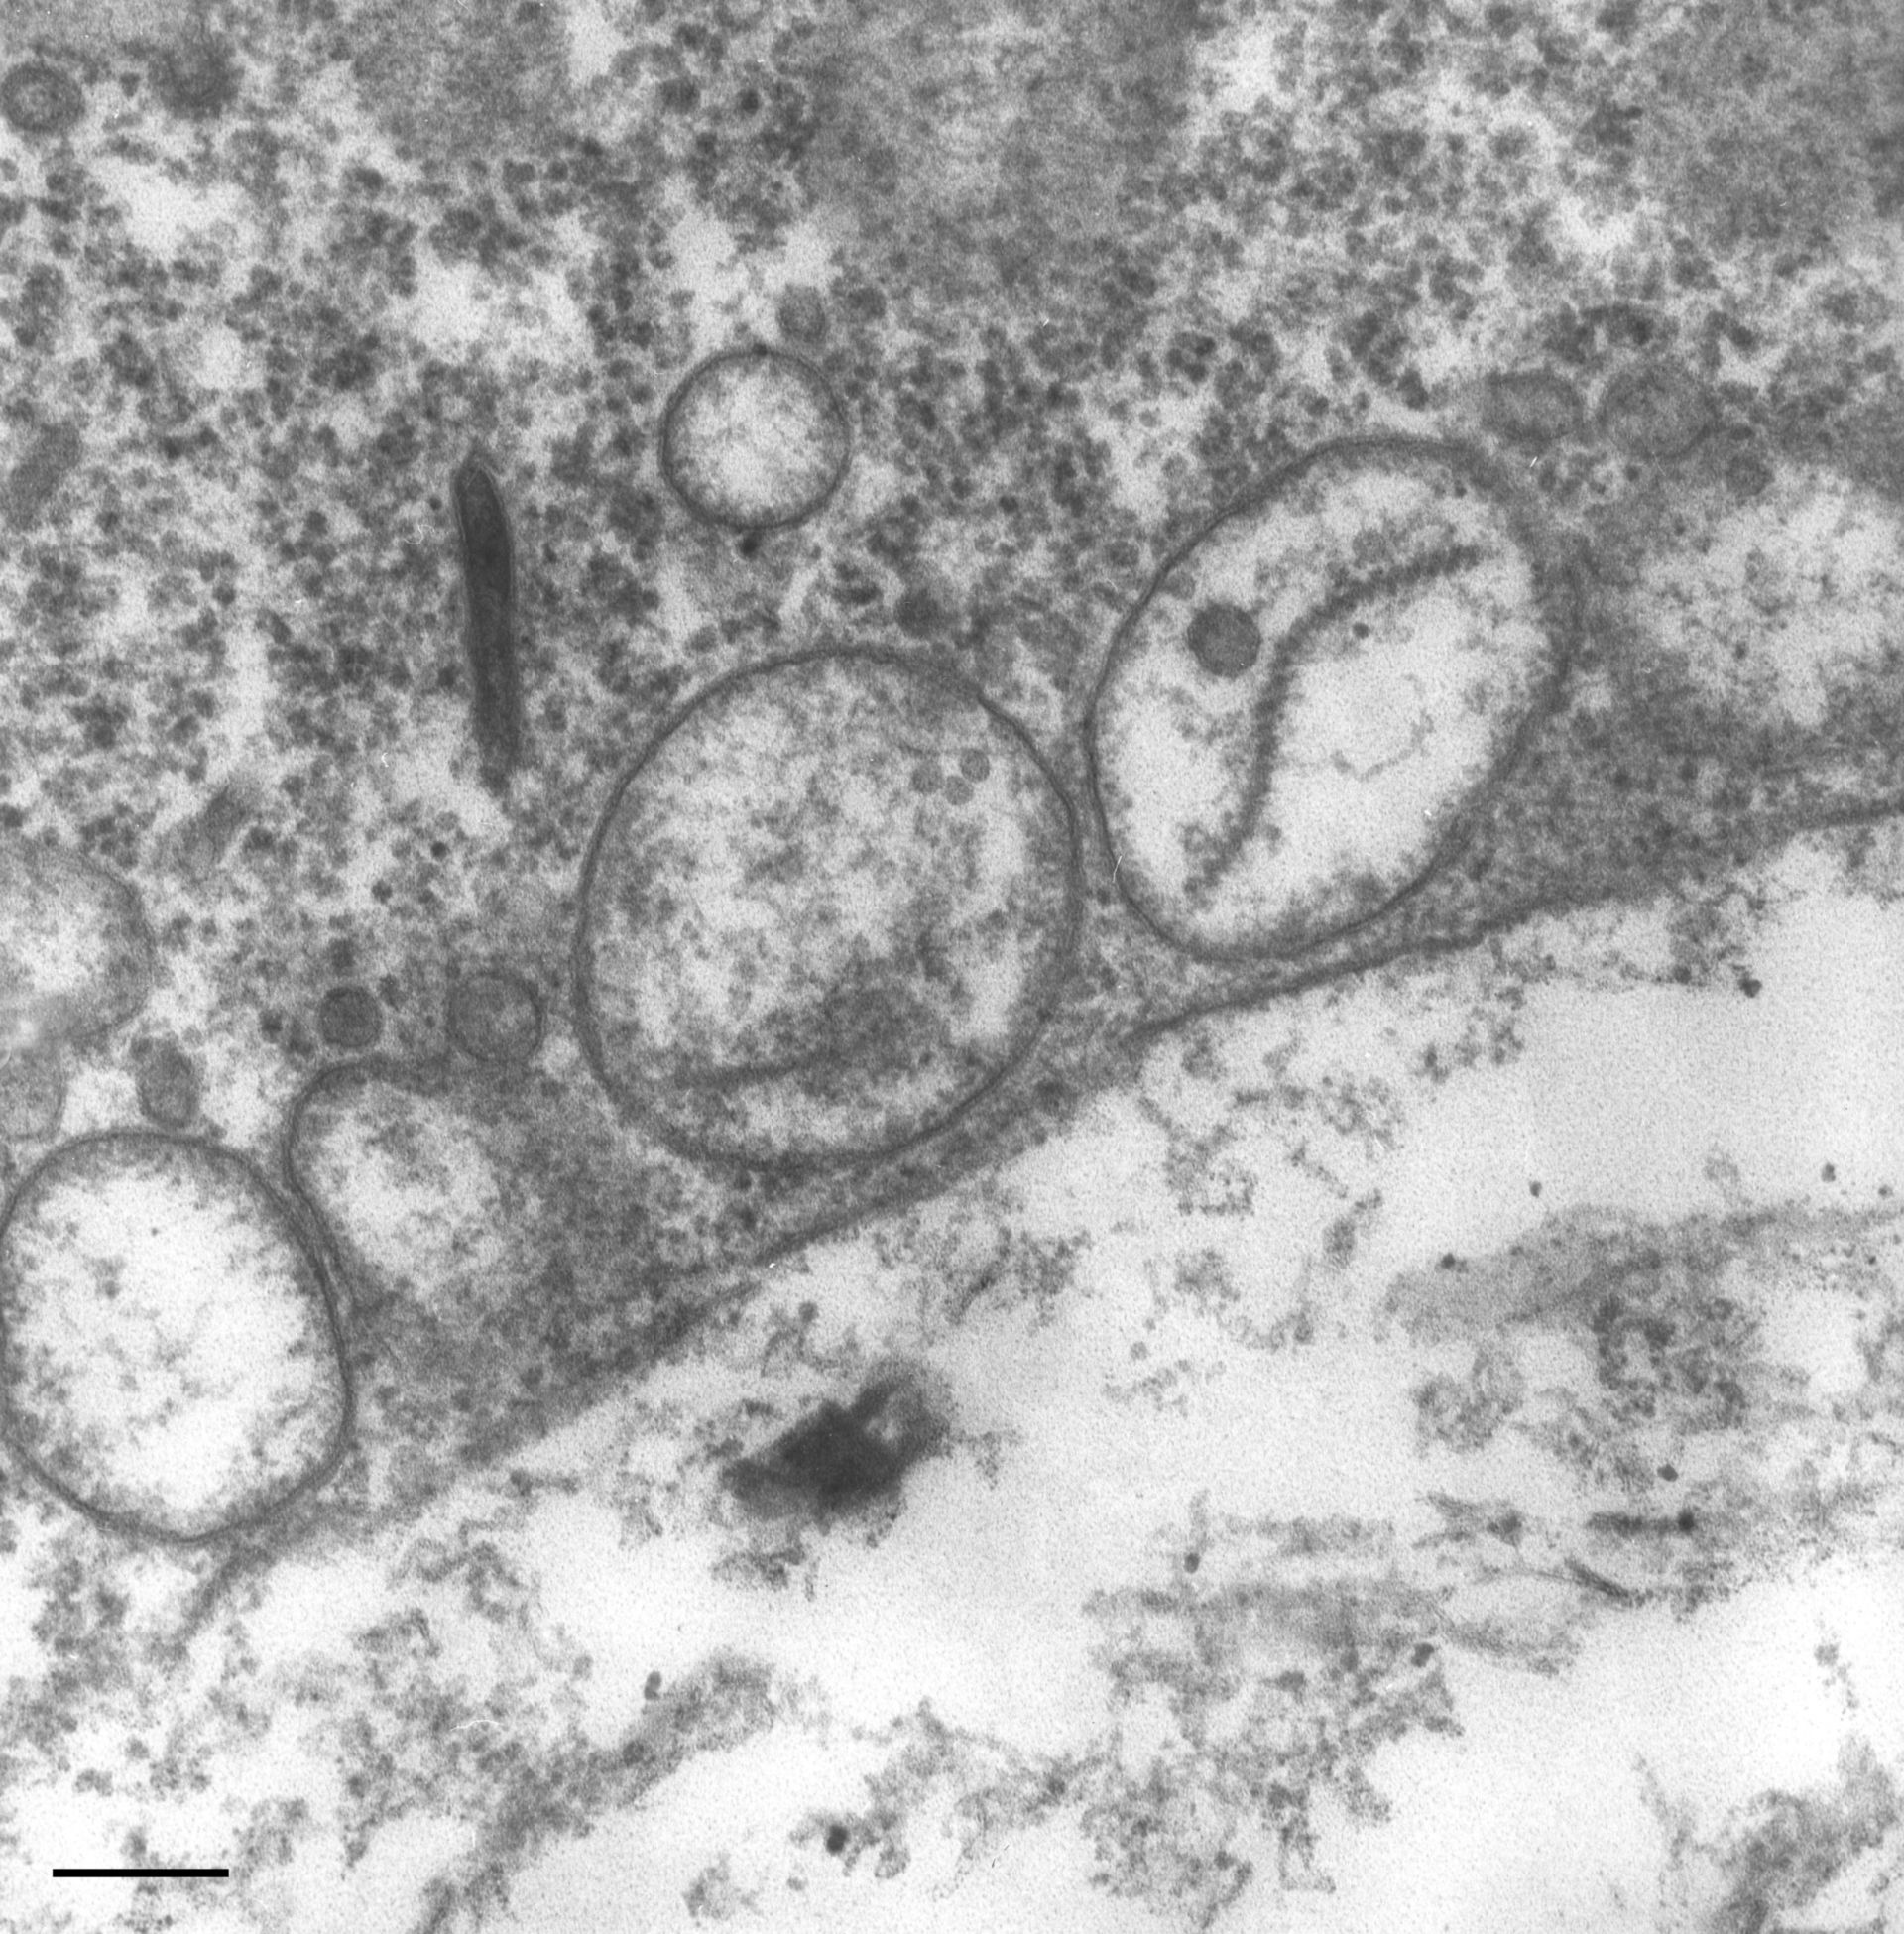 Paramecium multimicronucleatum (Primary lysosome) - CIL:36739